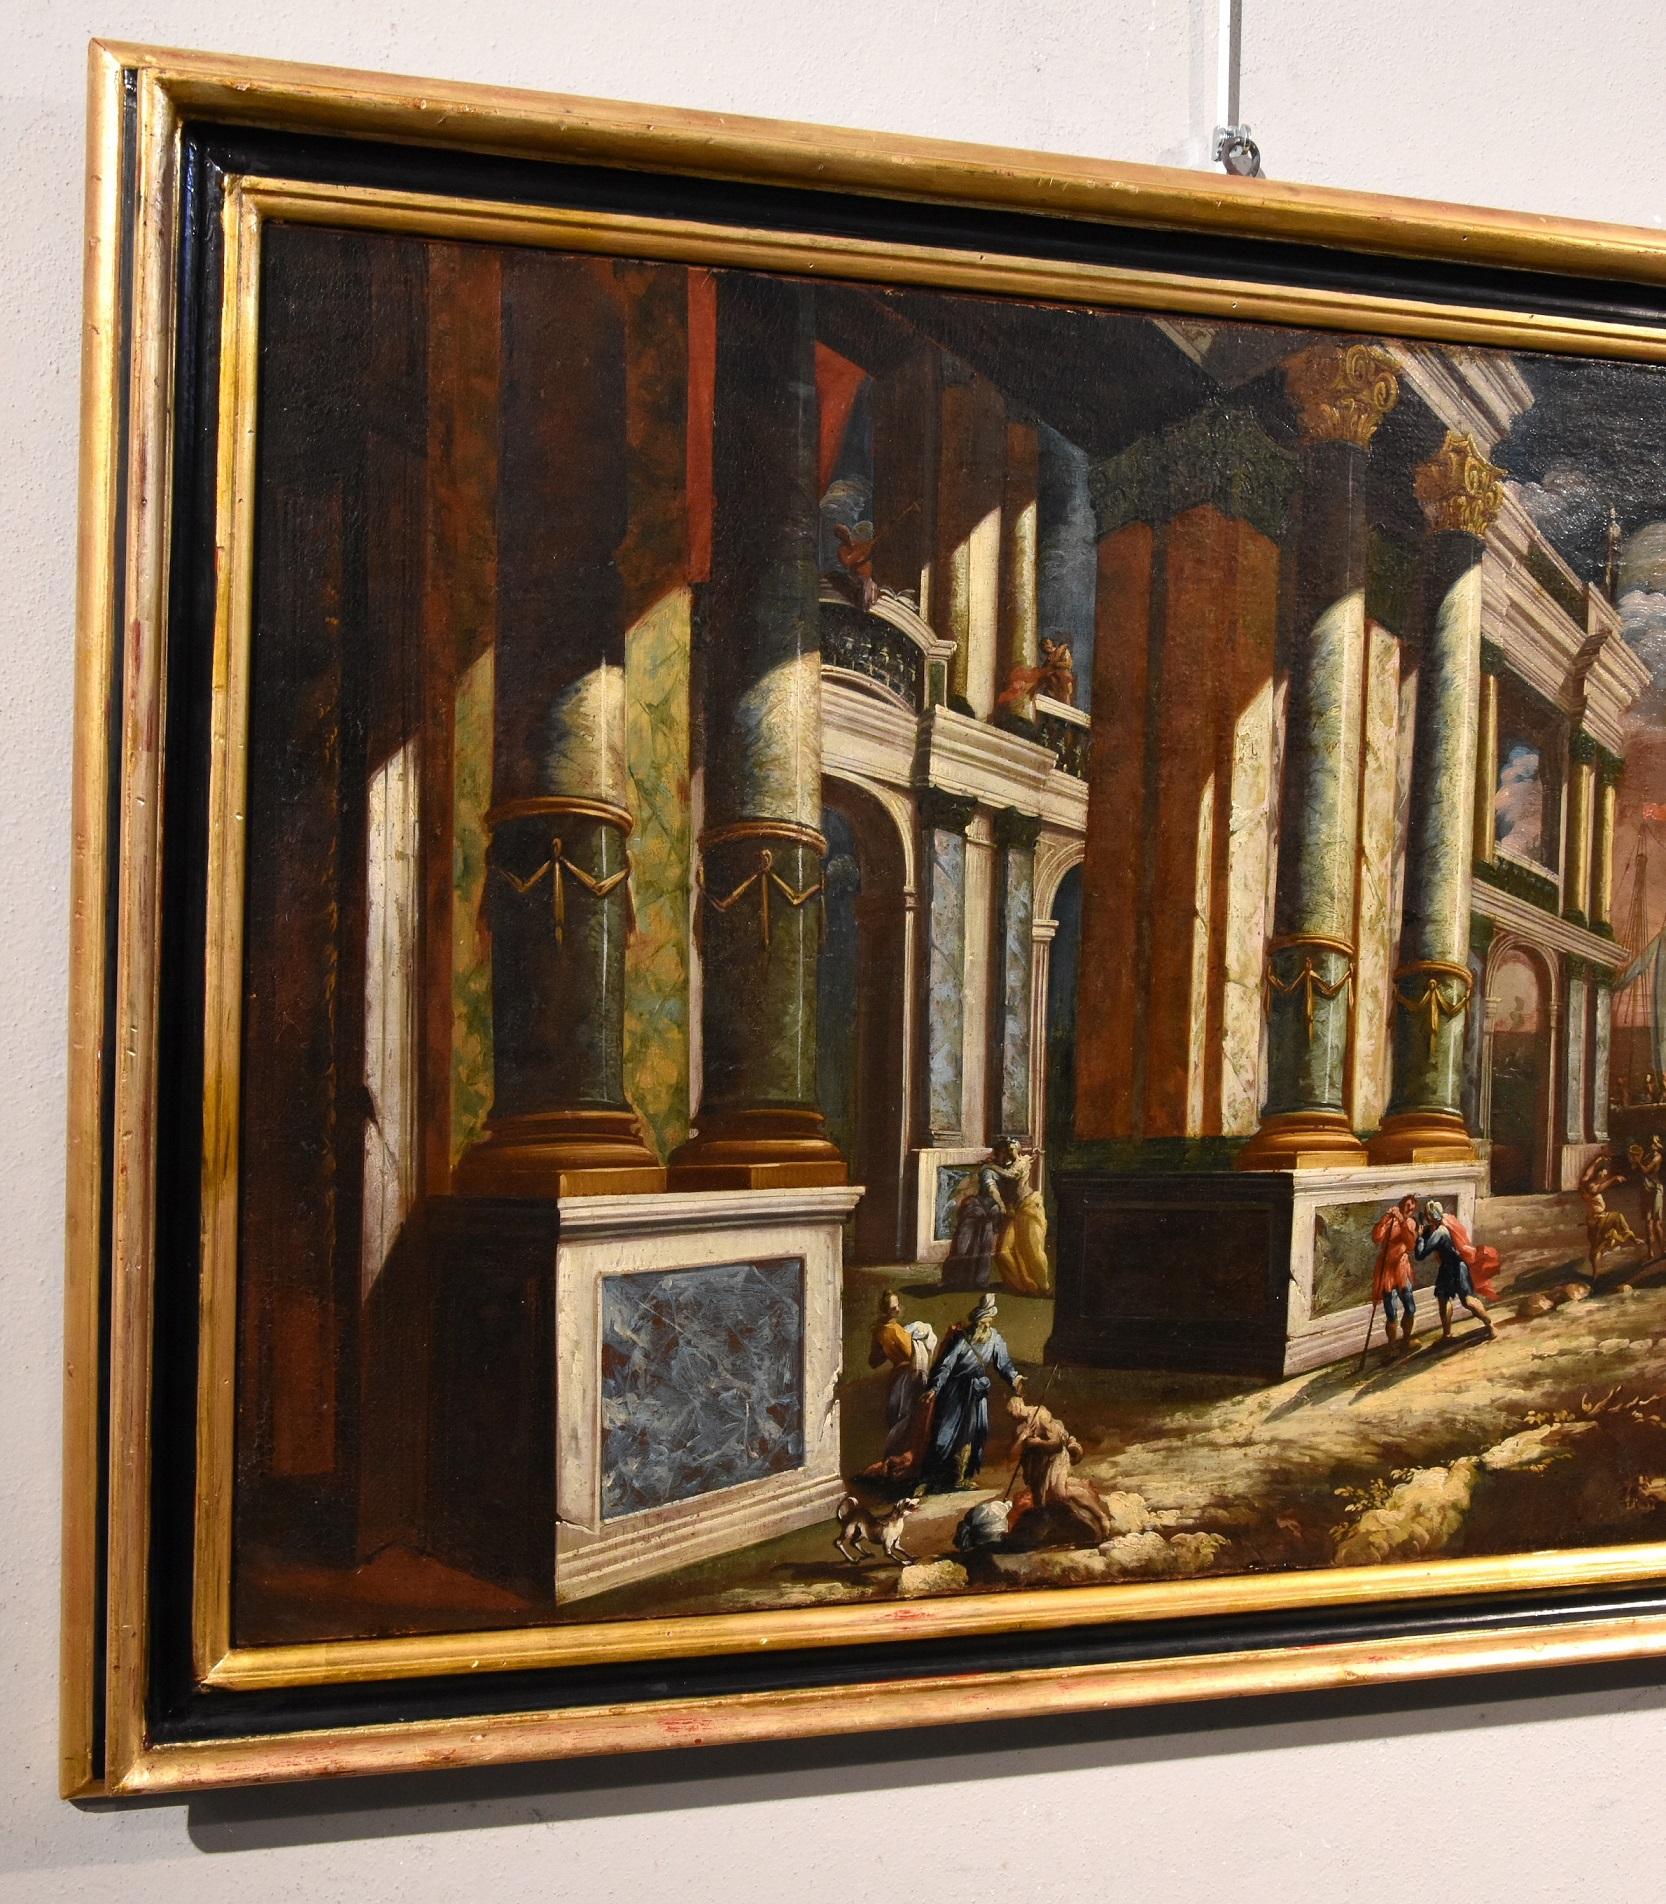 Jacob Ferdinand Saeys (Antwerpen 1658 - Wien 1726) und Werkstatt
Architektonisches Capriccio mit Blick auf eine Küste bei Sonnenuntergang und Figuren

Ölgemälde auf Leinwand
60 x 91 cm, mit Rahmen 75 x 104 cm.

Das vorgeschlagene Gemälde, ein